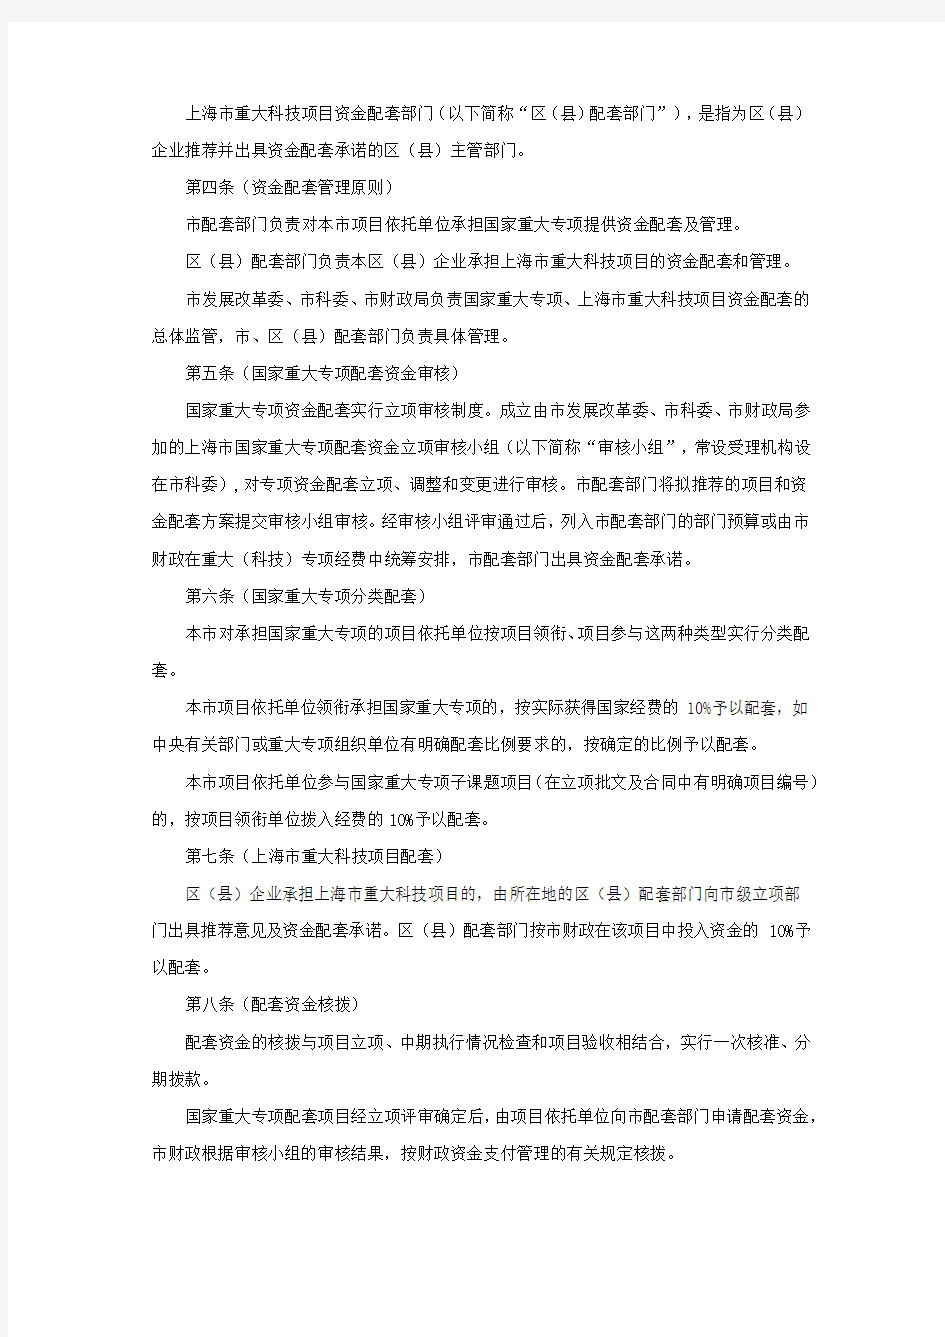 国家重大(科技)专项和上海市重大科技项目资金配套管理办法(暂行)